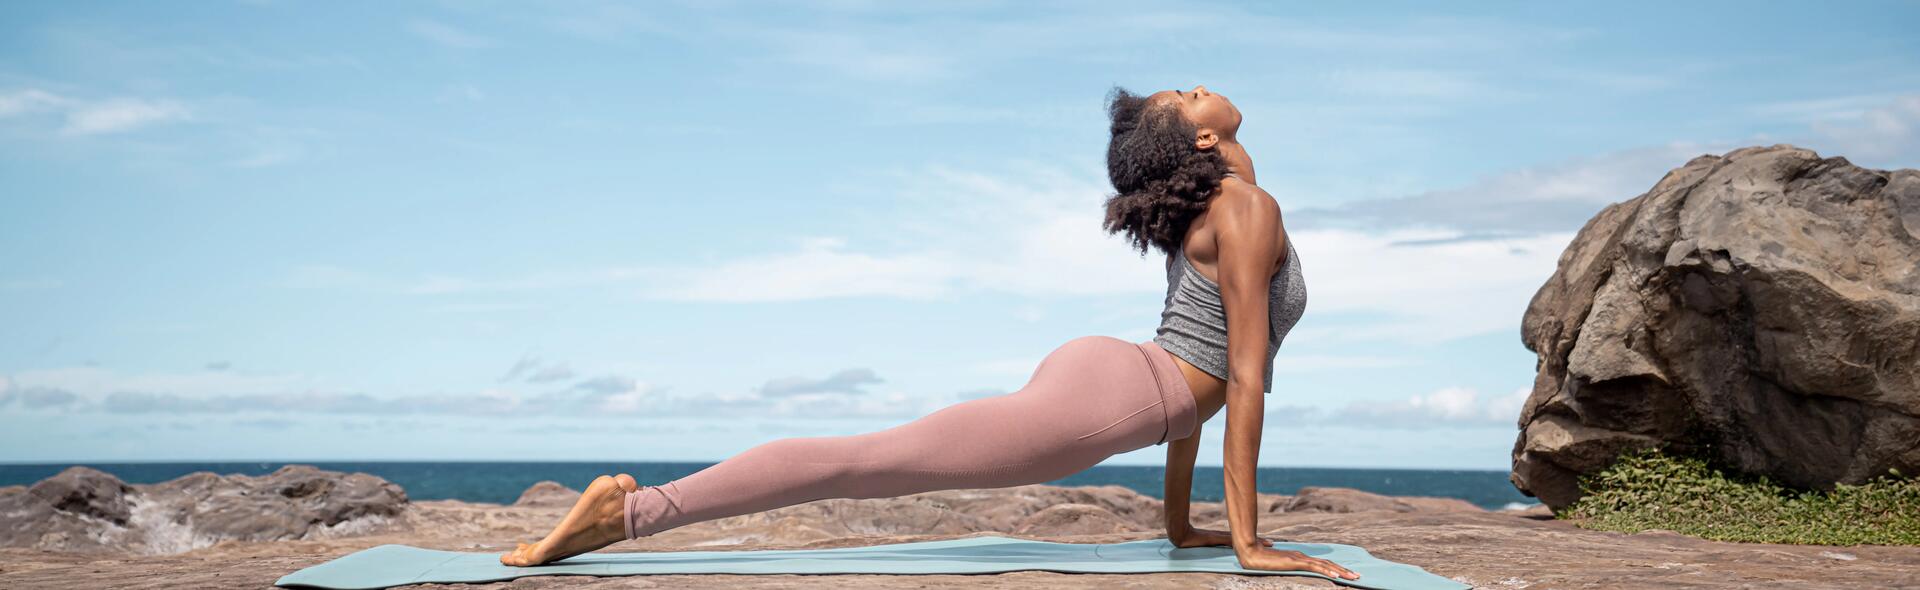 Yoga: heilzaam voor lichaam en geest